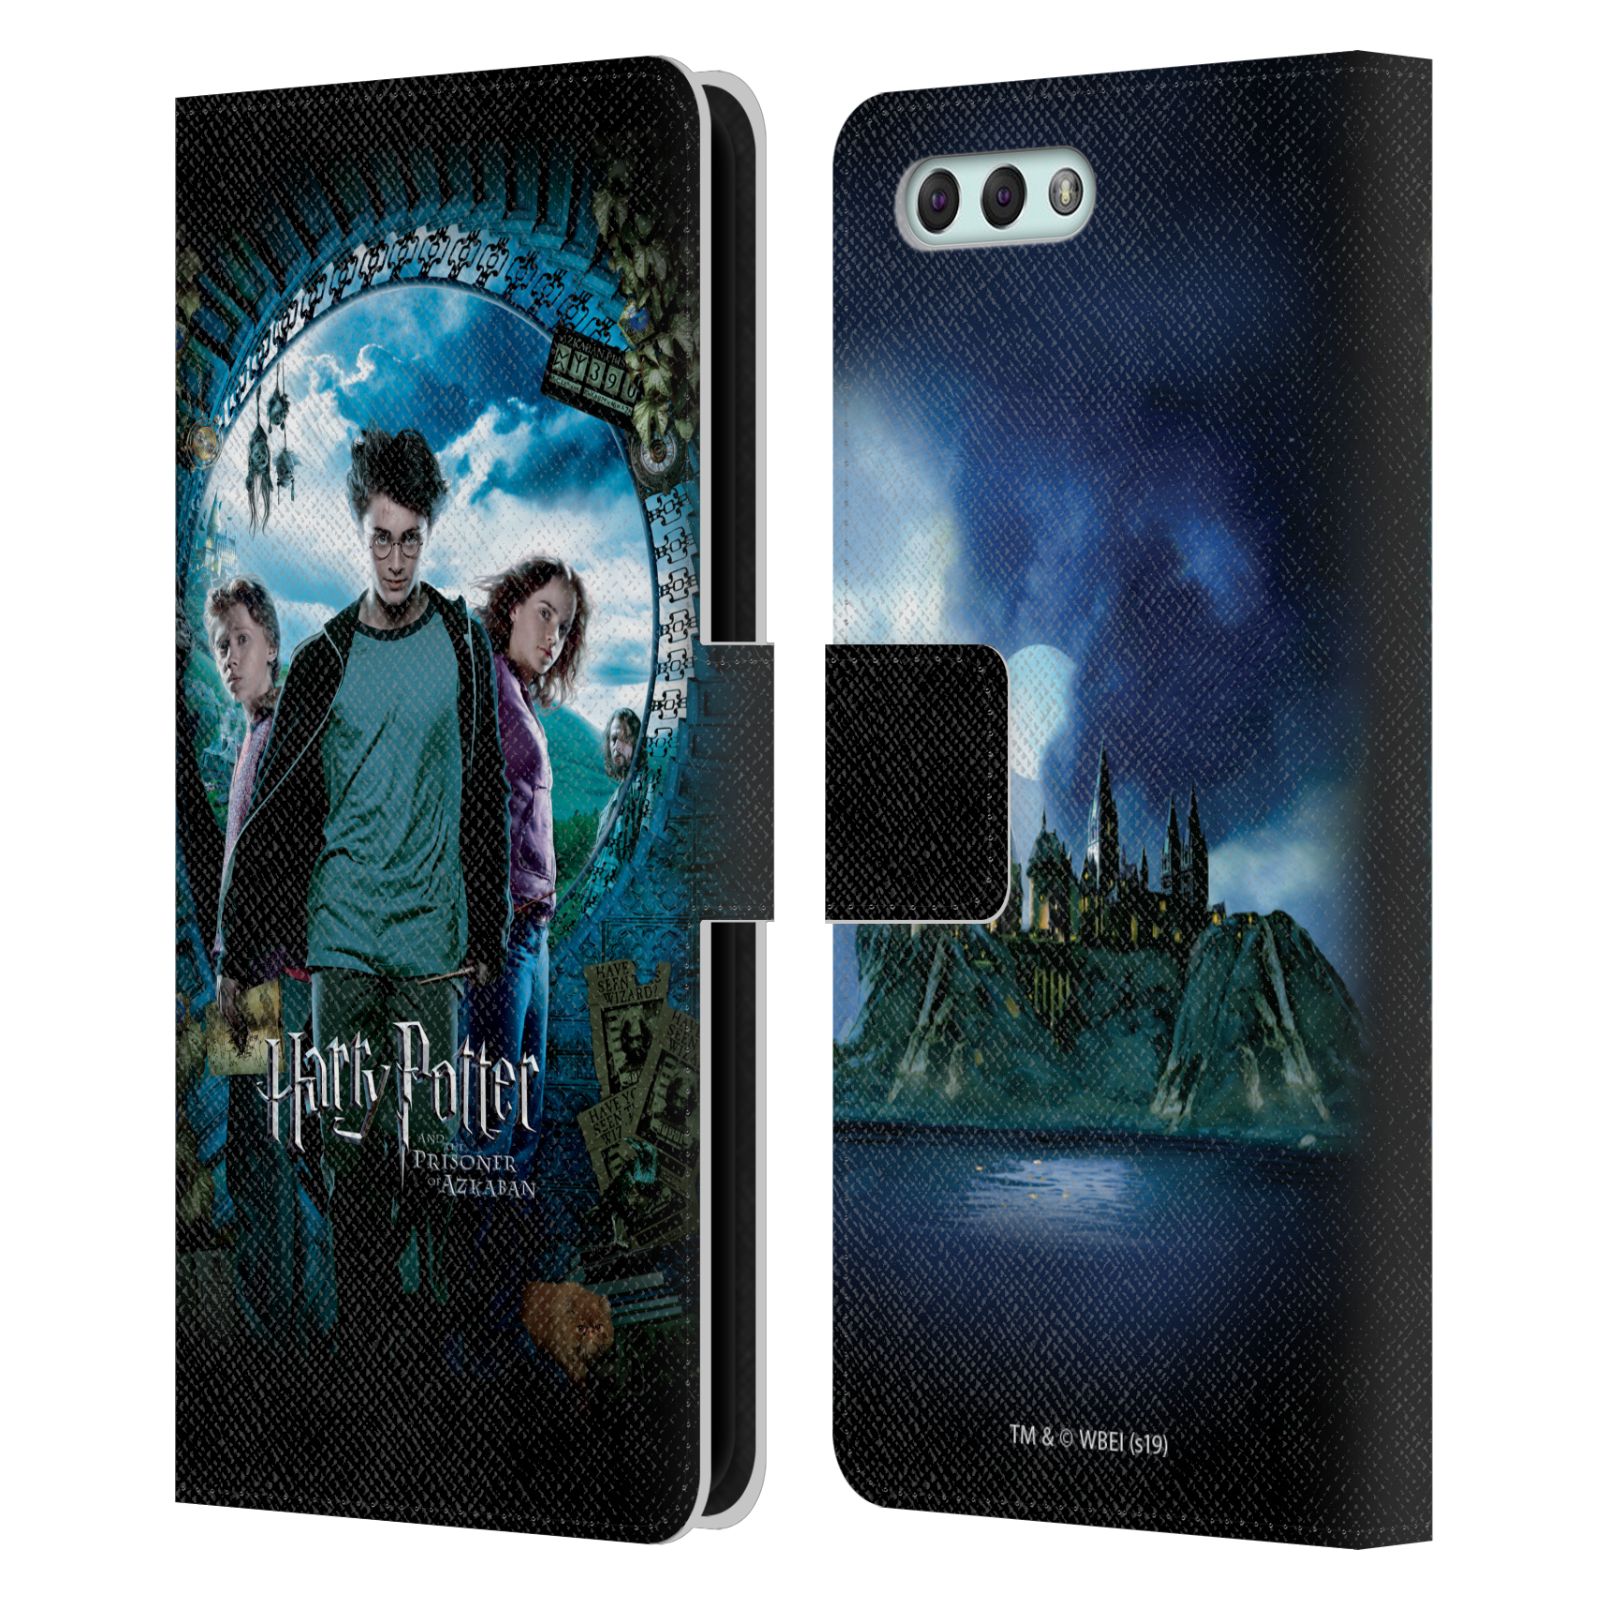 Pouzdro na mobil Asus Zenfone 4 ZE554KL  - HEAD CASE - Harry Potter - Vězeň z Azkabanu